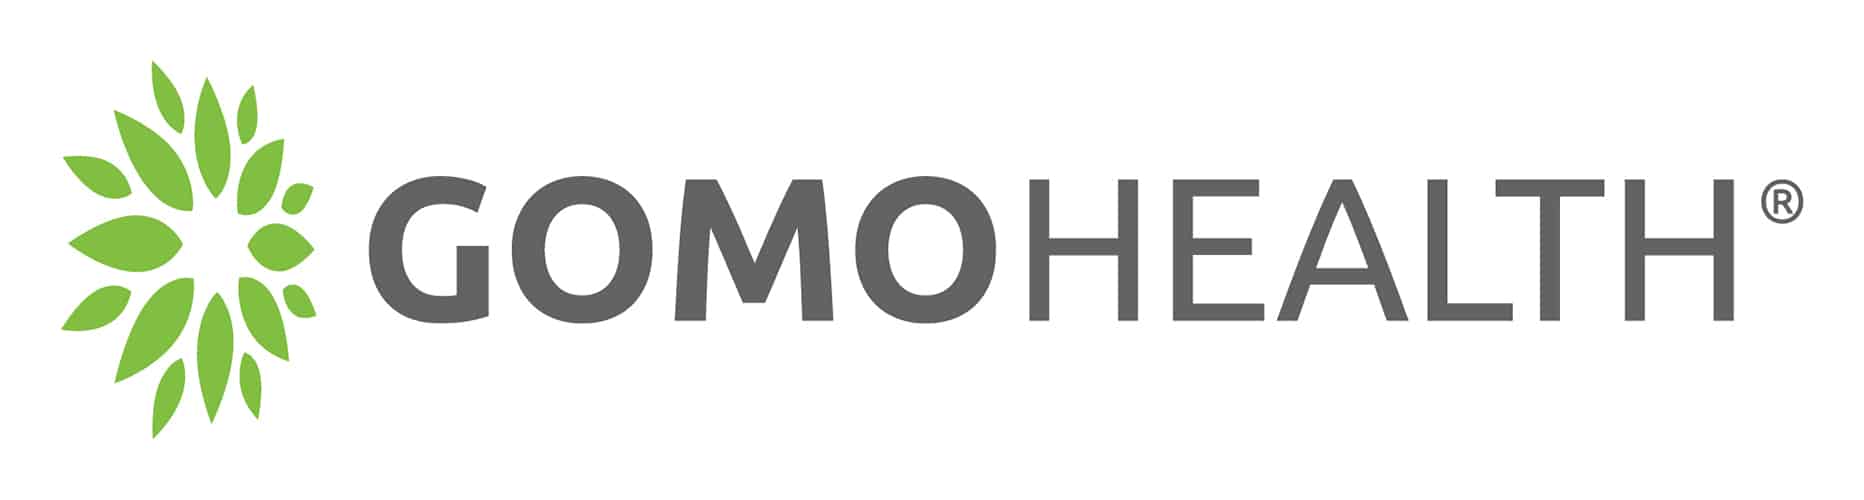 gomohealth_horizontal_logo-2021